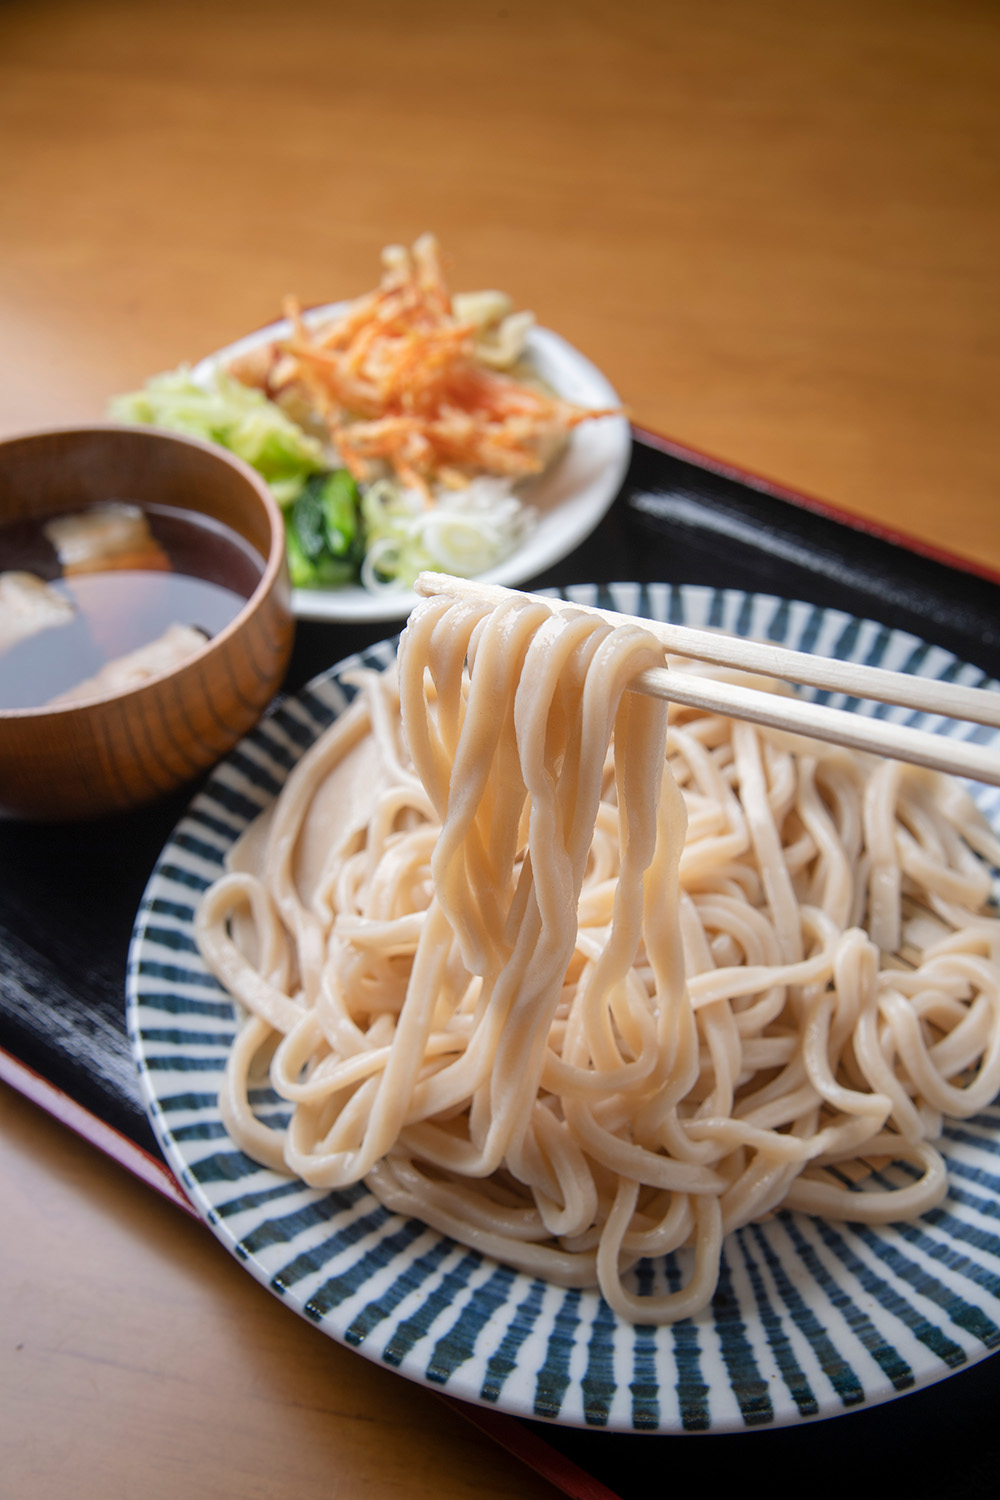 普通盛り 天ぷら付き 肉汁850円（休日価格）。天ぷらは旬の野菜のかき揚げなど3品ほど。肉汁変更は無料。平日は各うどん50円引きで提供。